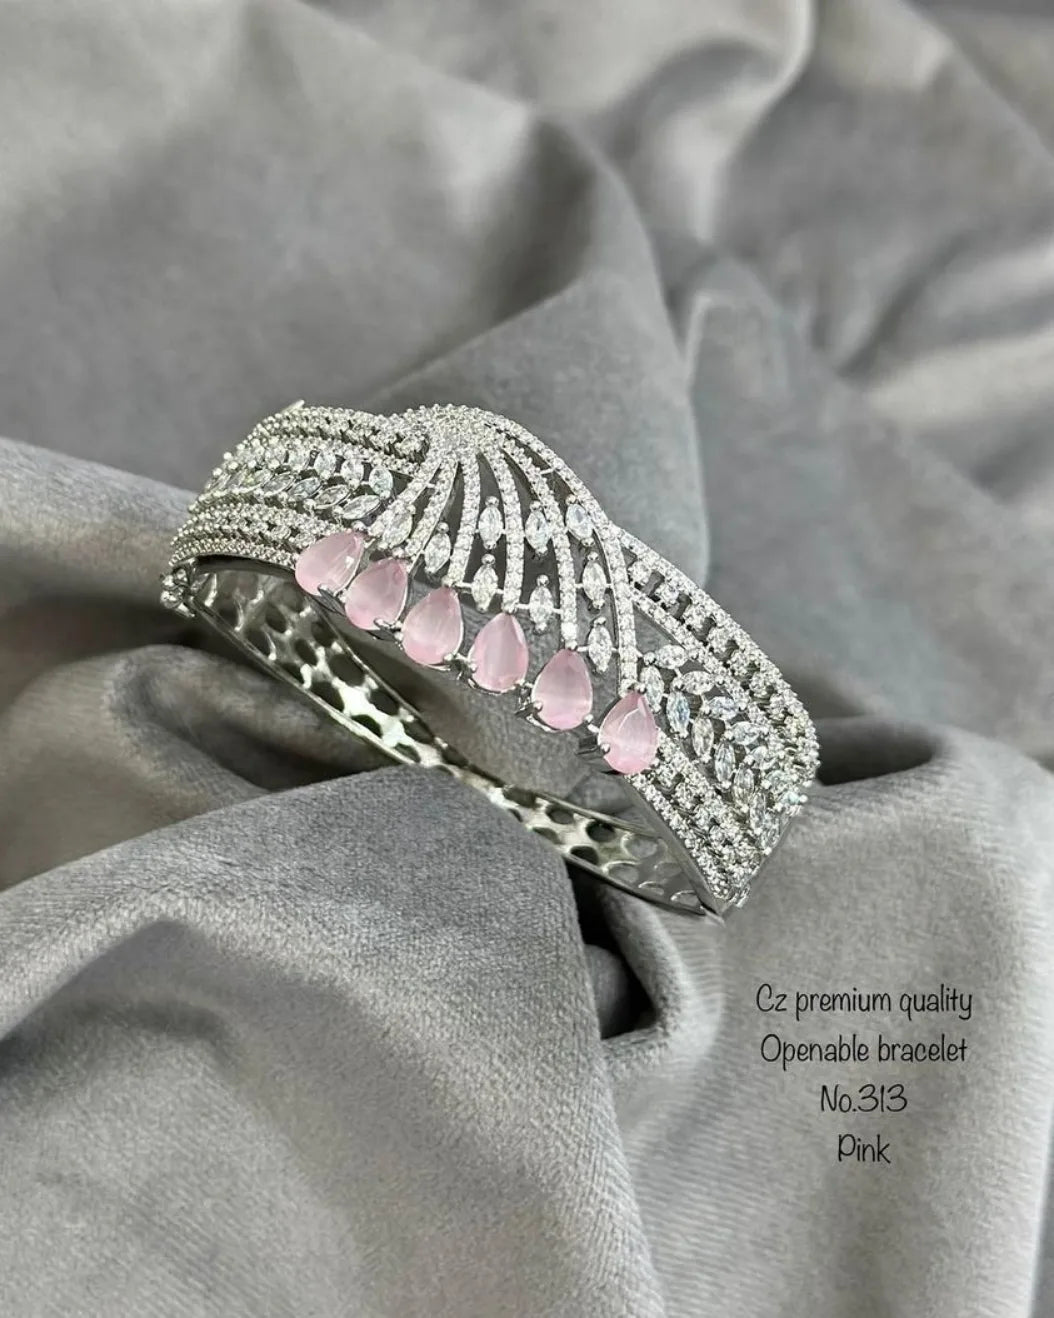 Beautiful American diamond openable bracelet , women's jewellery